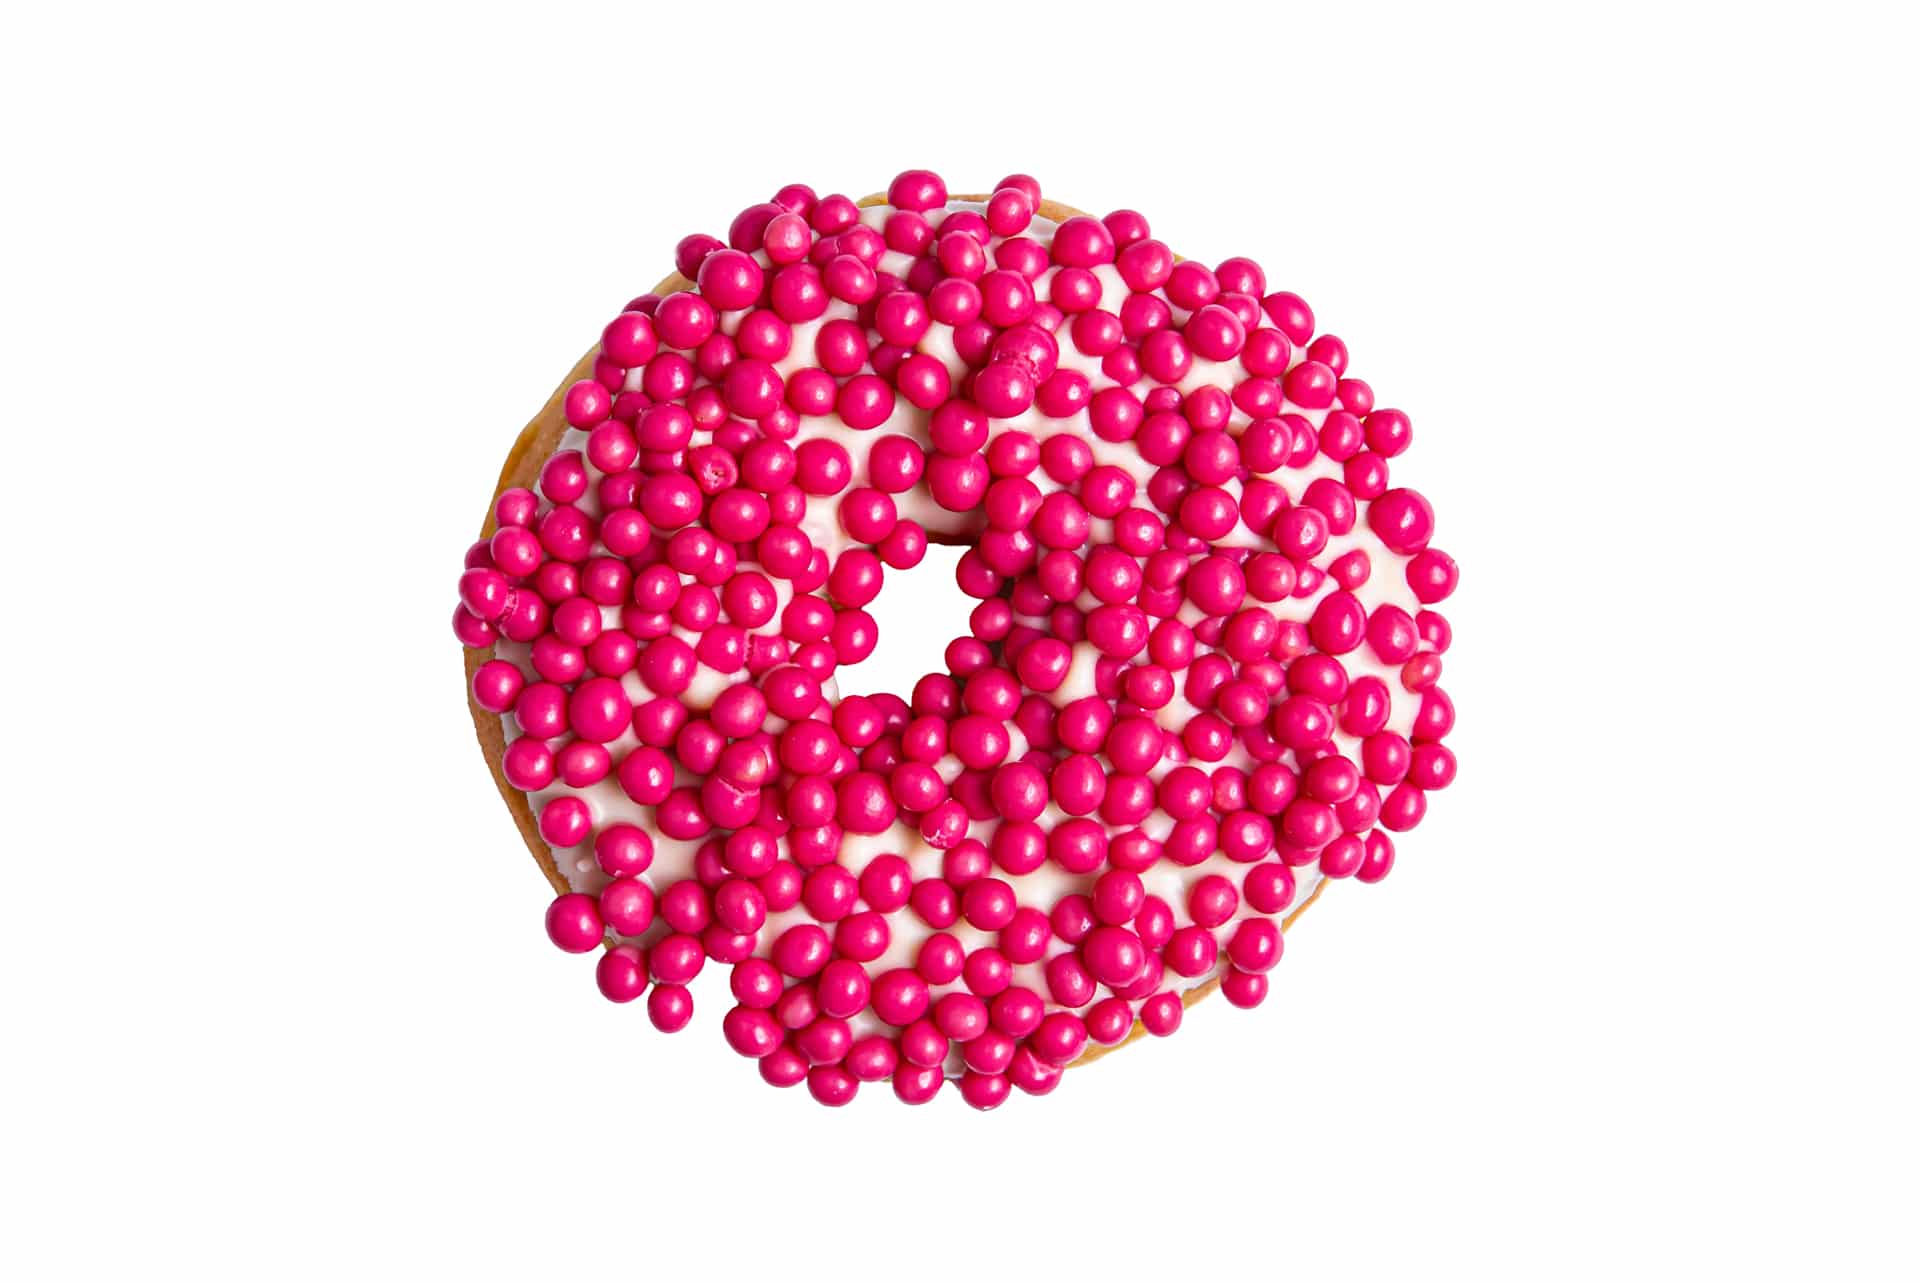 Maasikapallid, Maasikašokolaad, Dunkin donuts eesti, best doughnuts in estonia, parimad donutsid eestis, parimad sõõrikud eestis